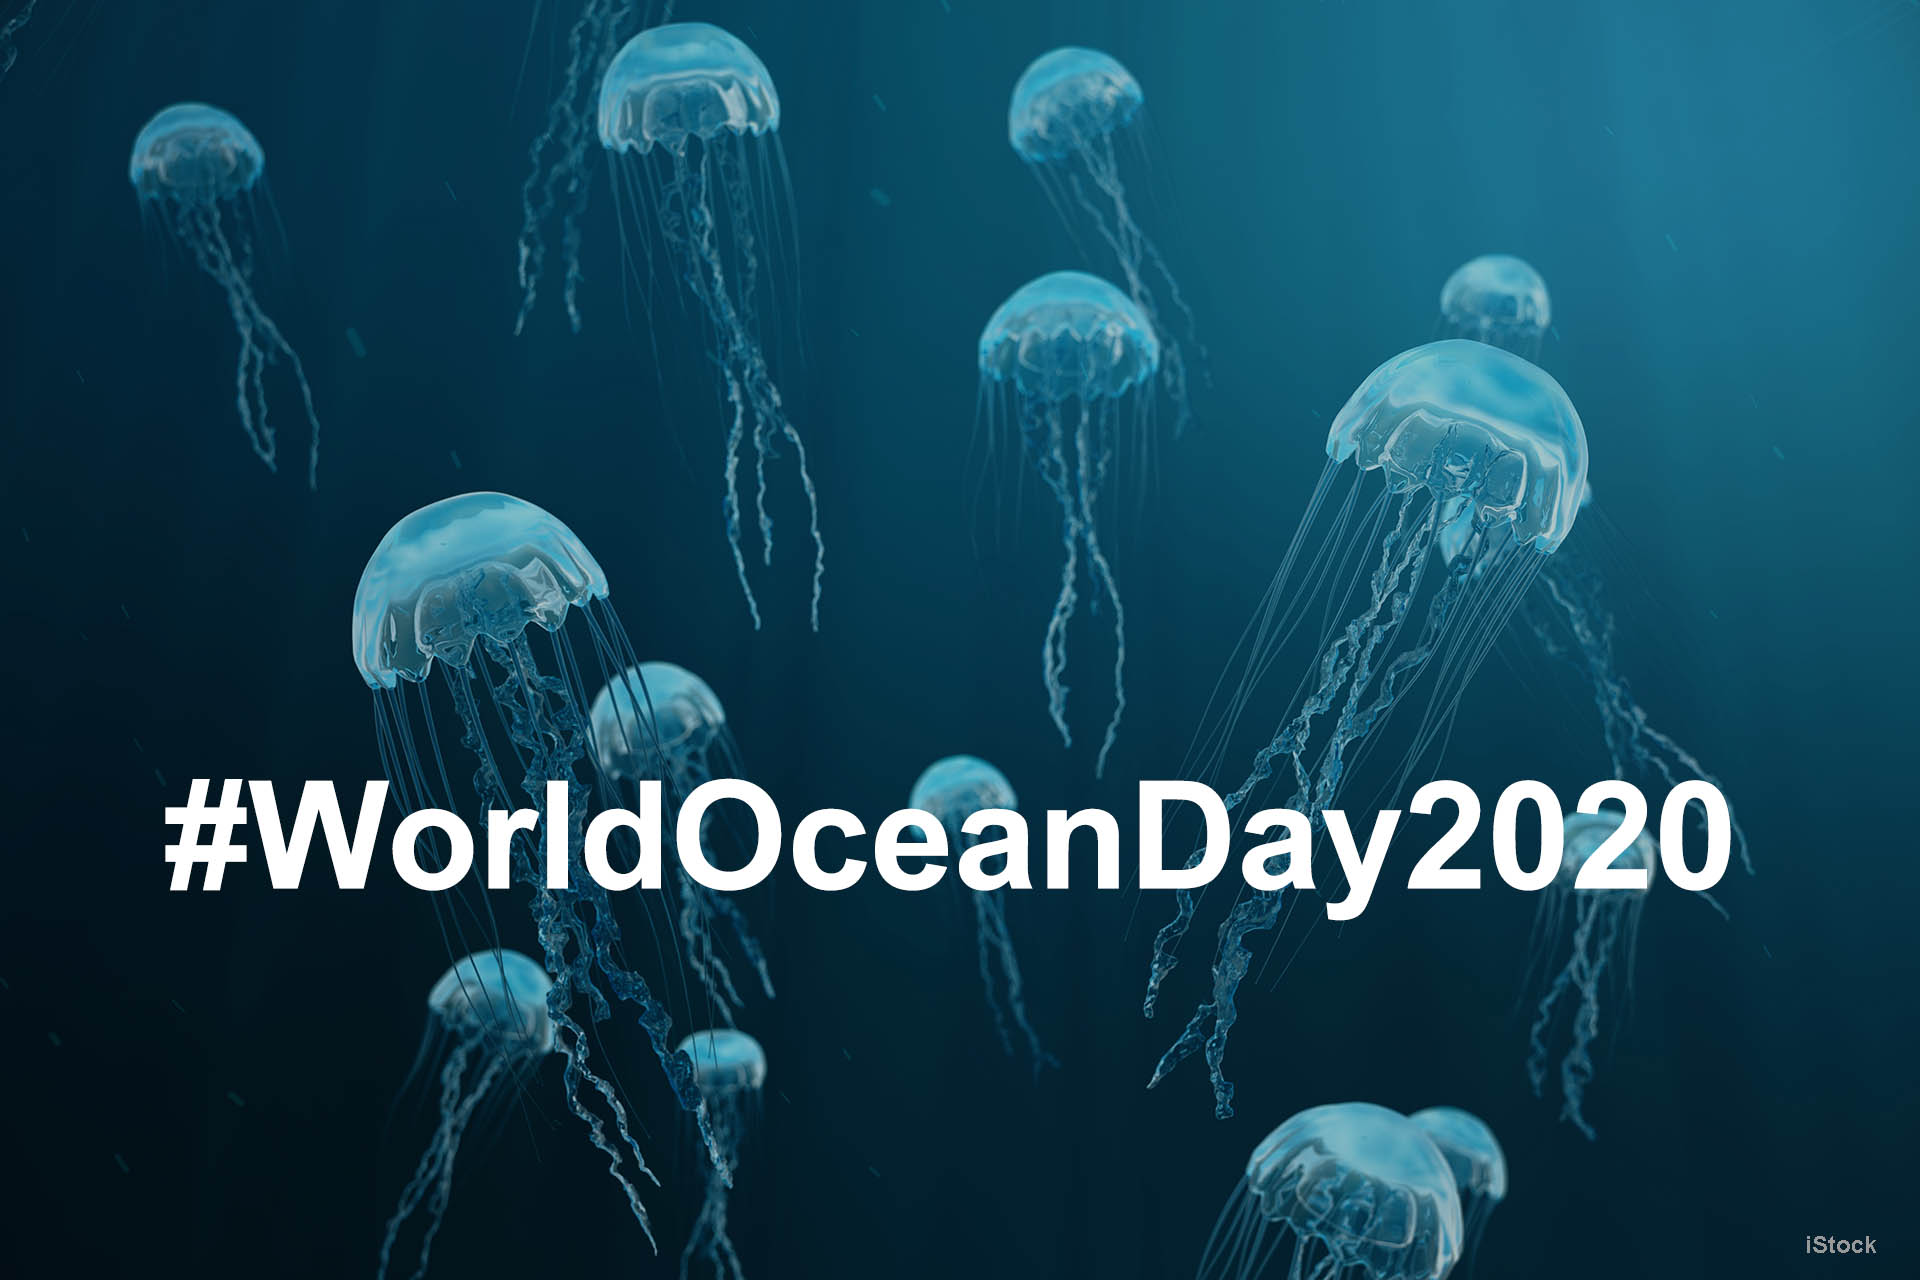 REV Ocean gears up for World Ocean Day 2020!